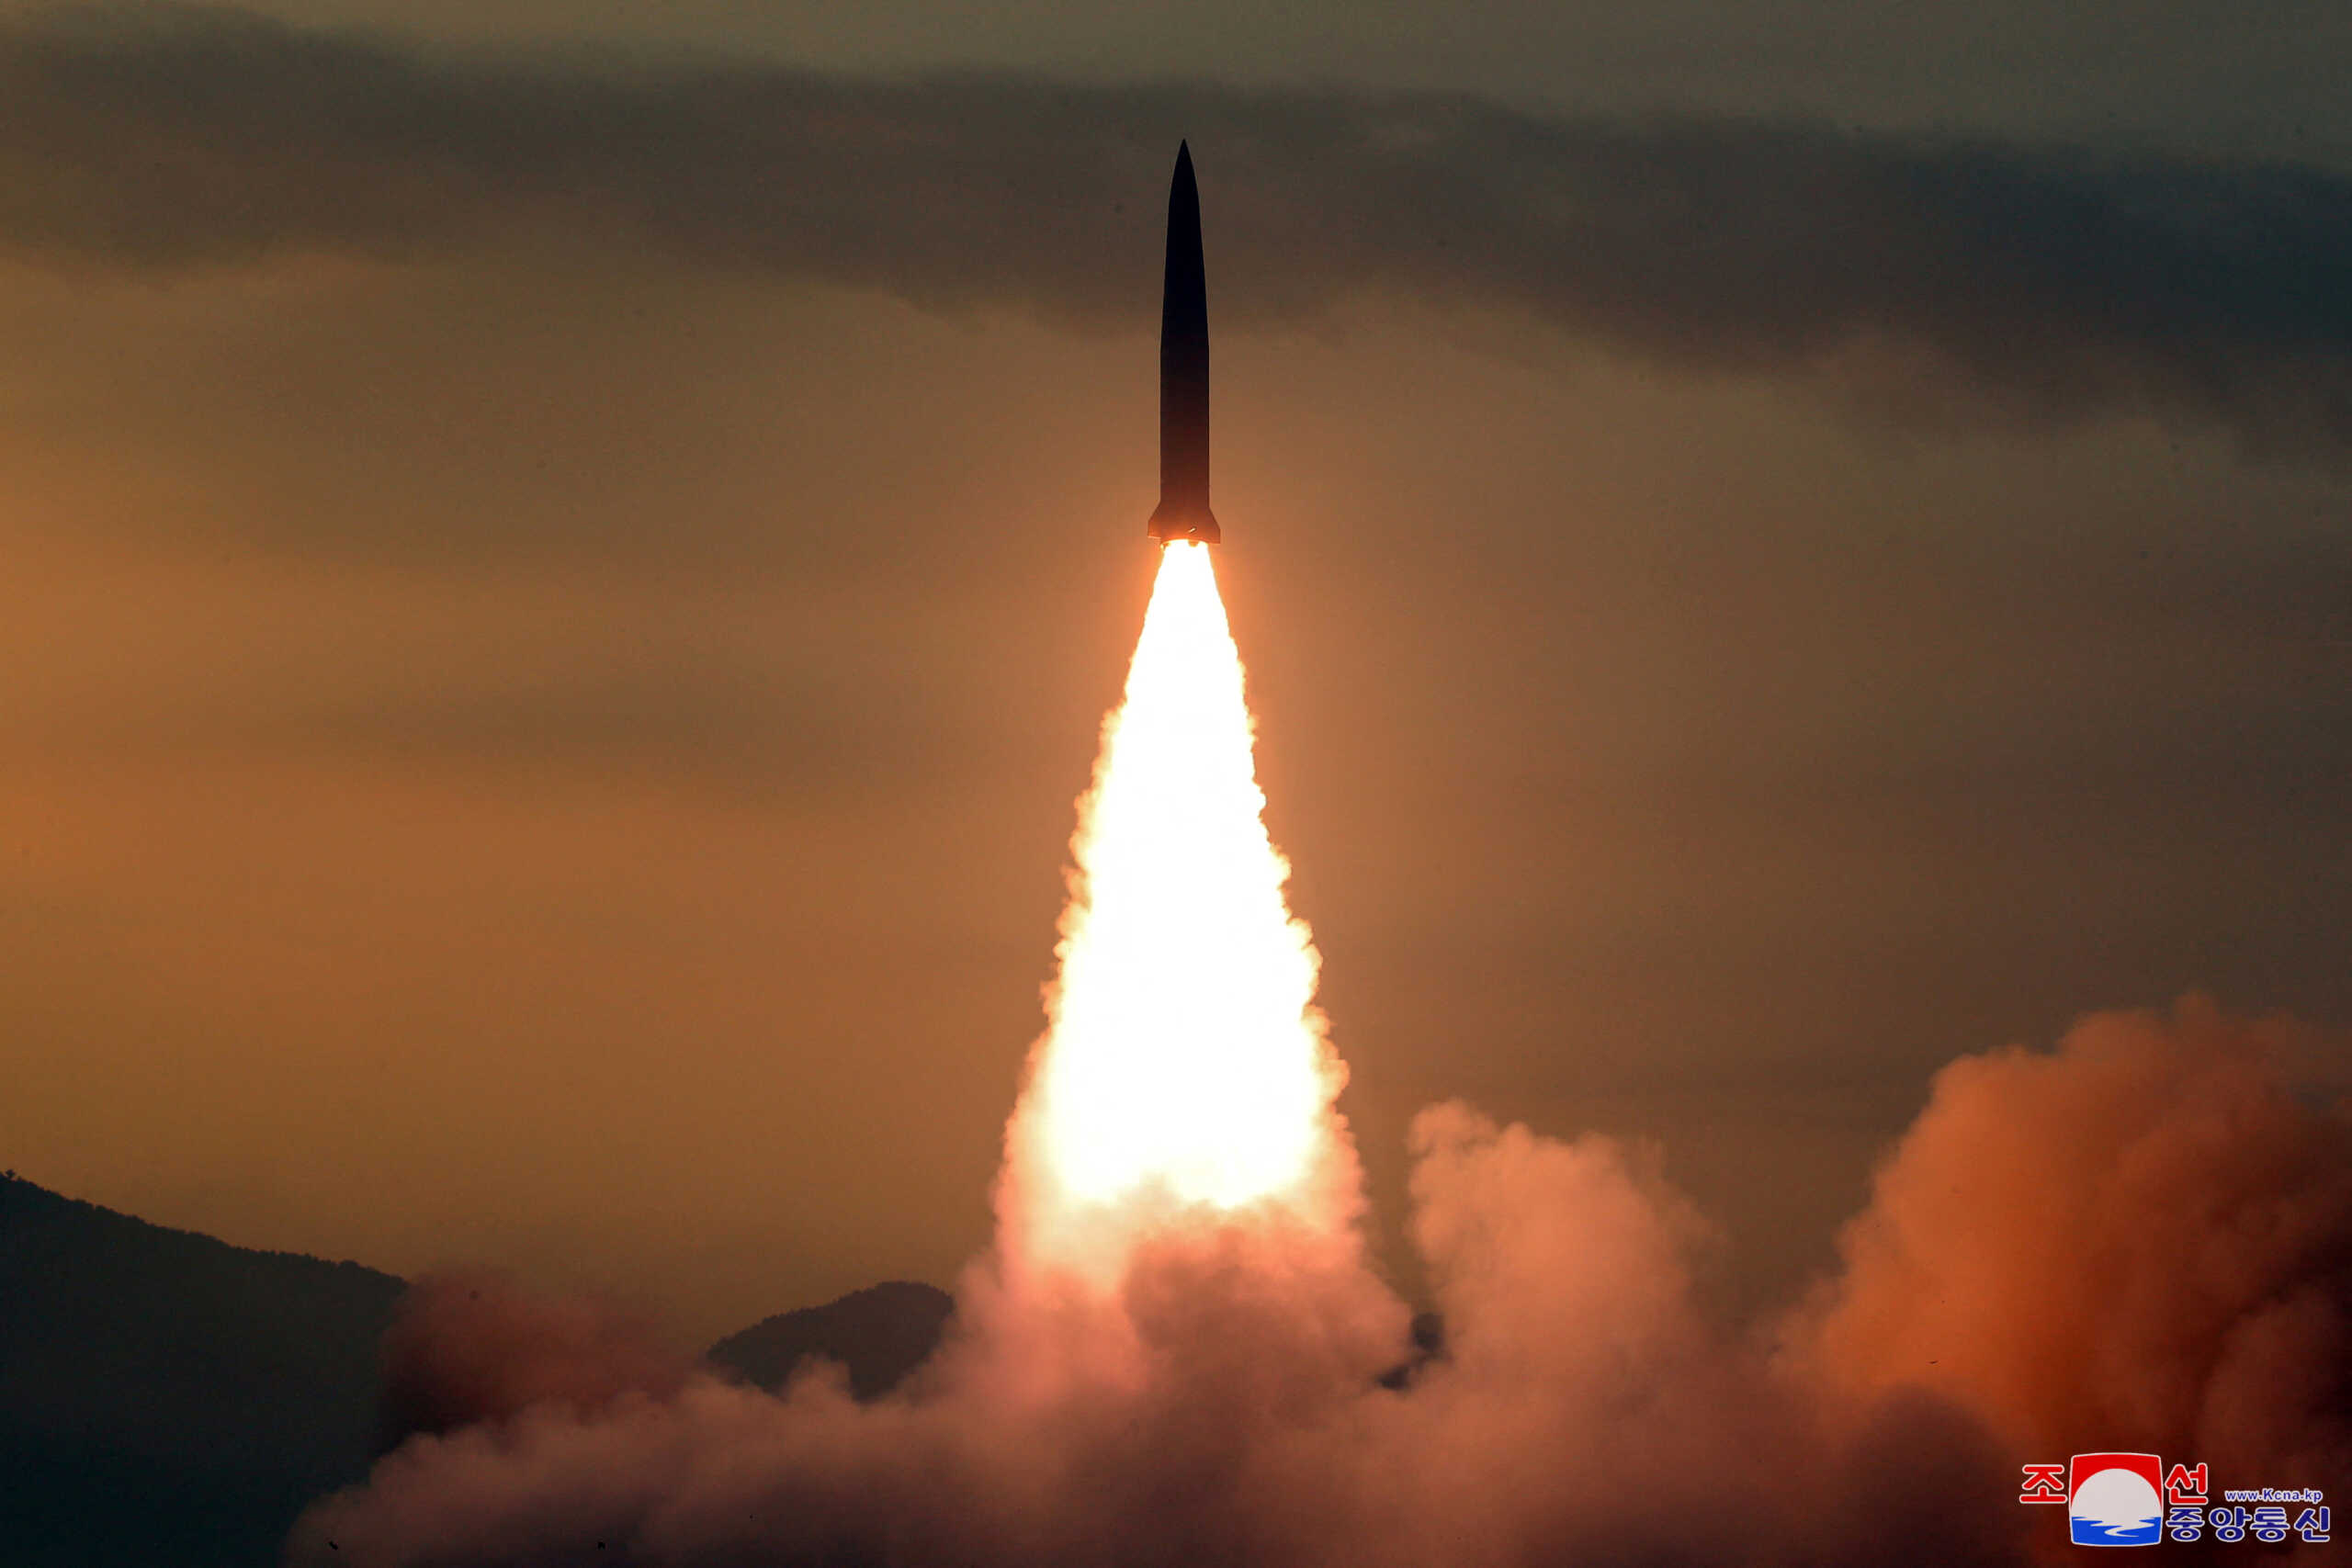 Νότια Κορέα και ΗΠΑ παρατείνουν τις στρατιωτικές ασκήσεις μετά την εκτόξευση βαλλιστικών πυραύλων από την Βόρεια Κορέα